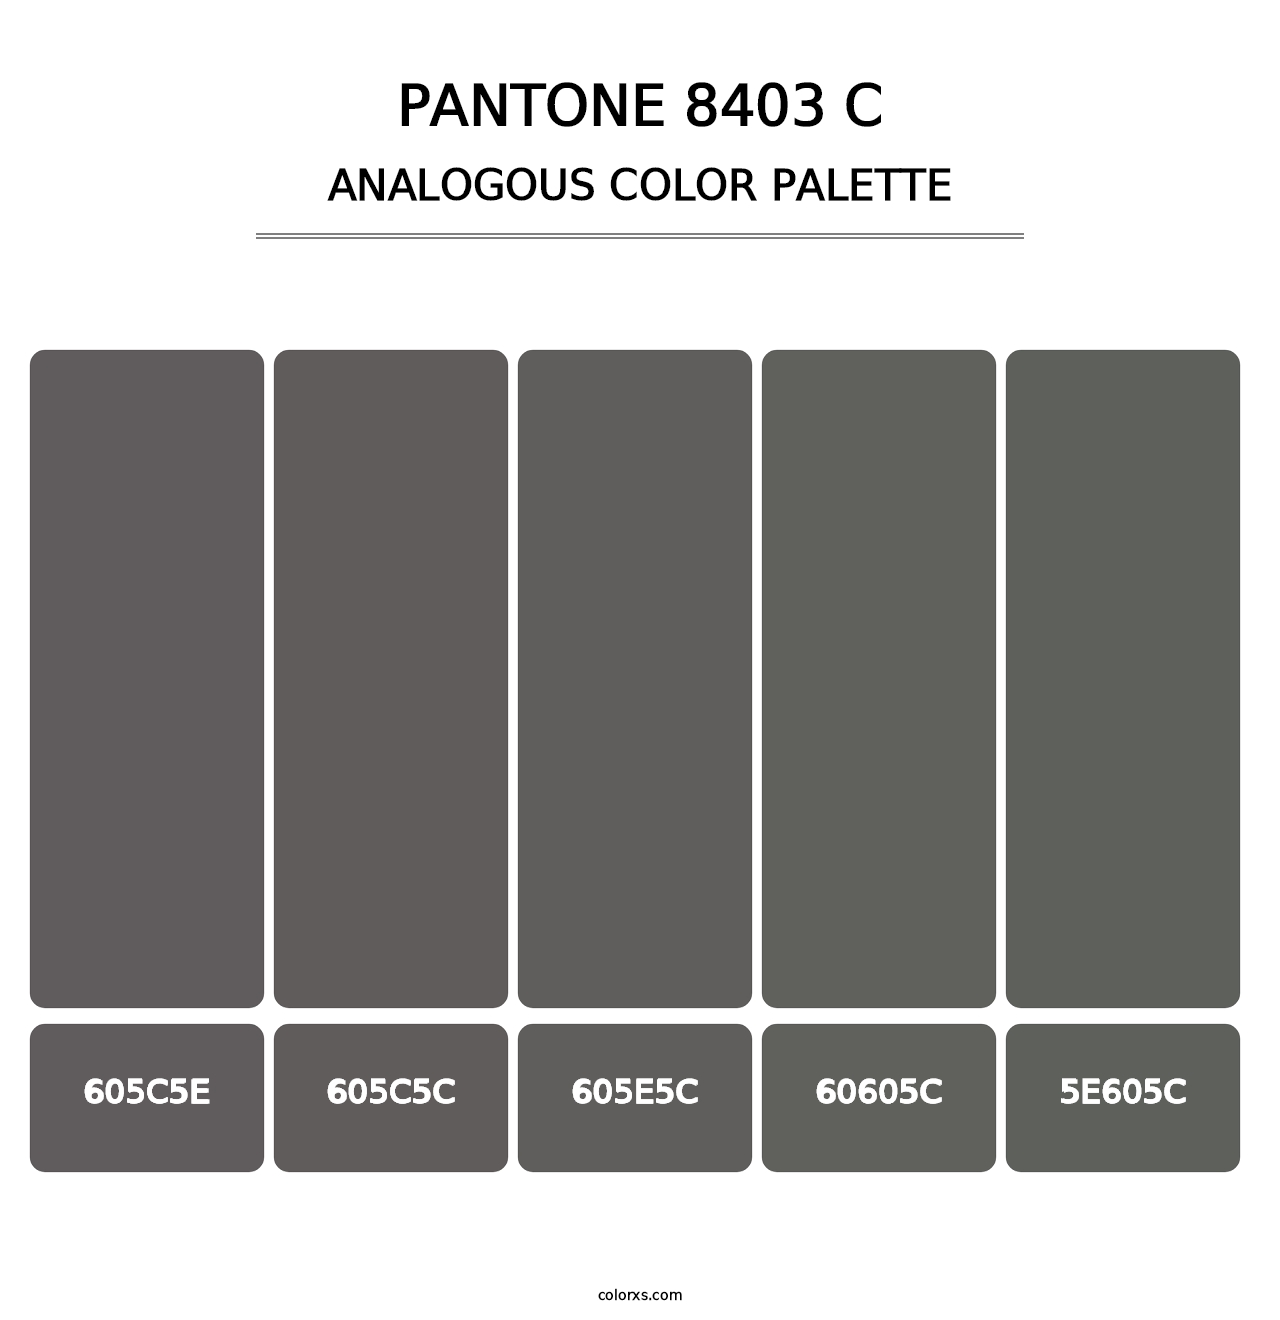 PANTONE 8403 C - Analogous Color Palette